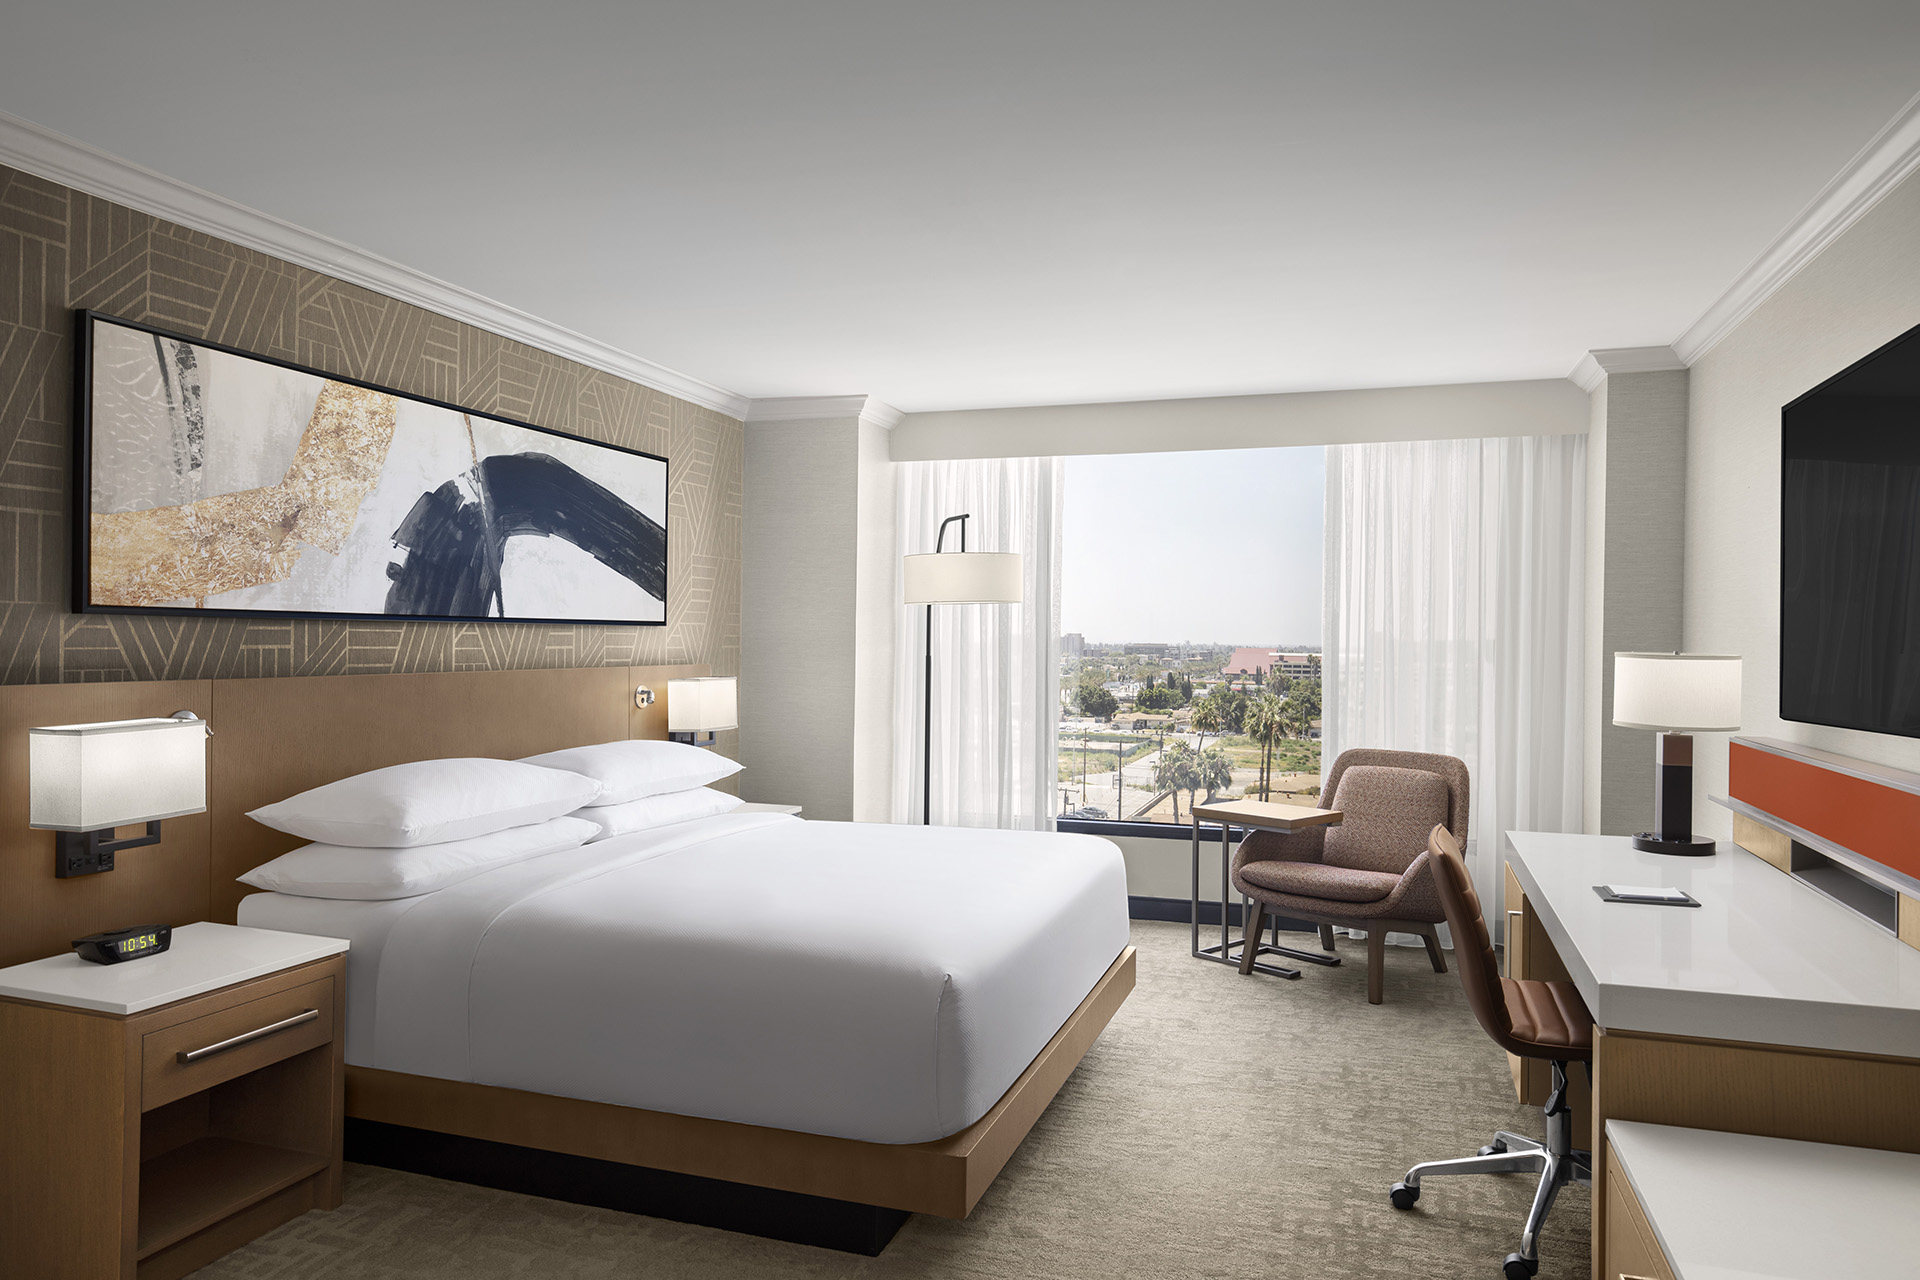 Delta Hotels by Marriott Anaheim Garden Grove